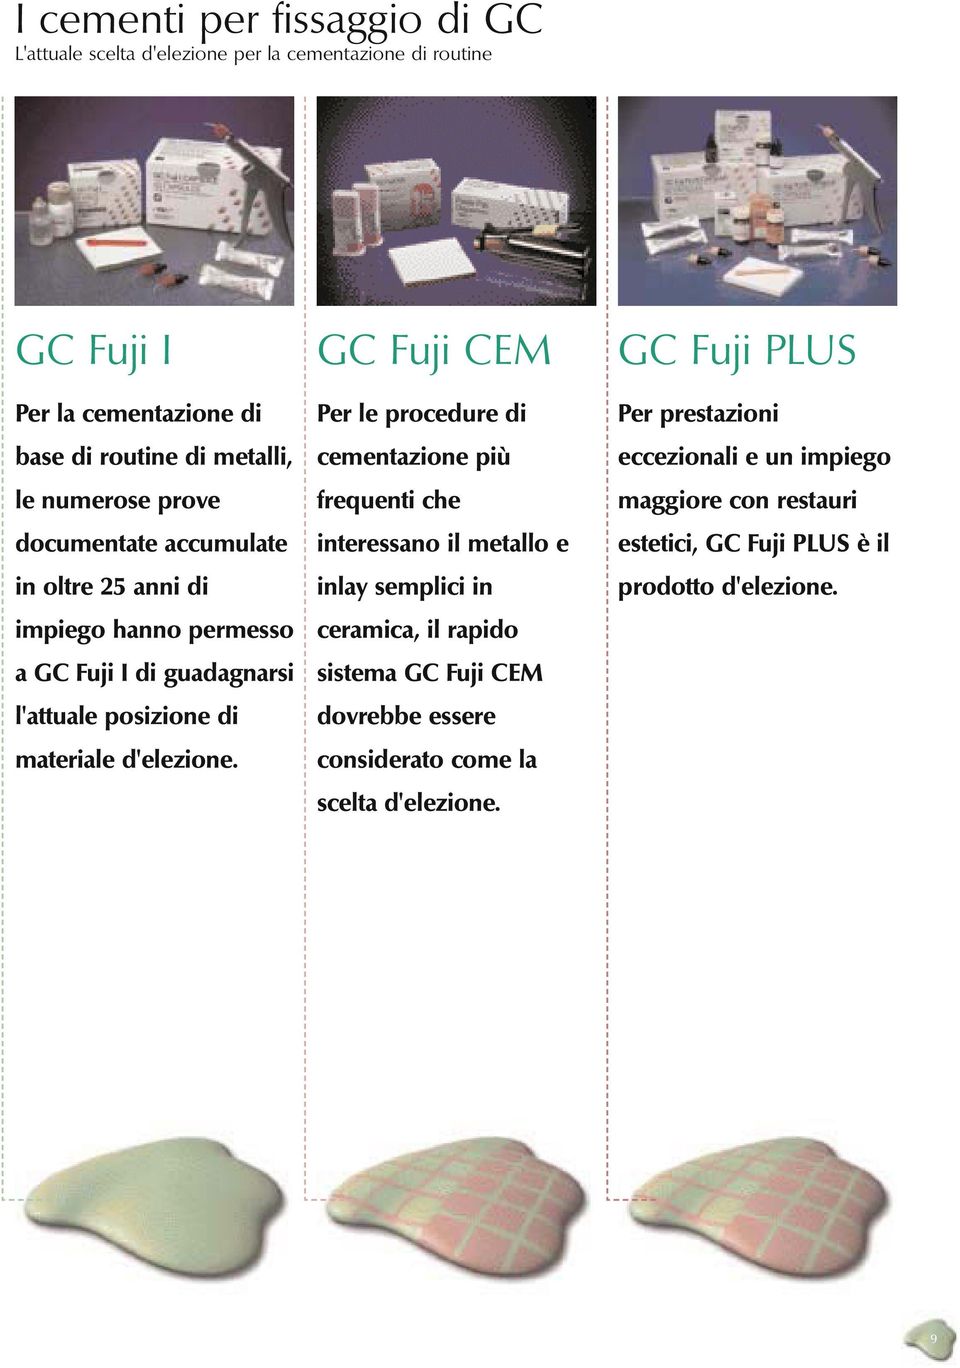 GC Fuji CEM Per le procedure di cementazione più frequenti che interessano il metallo e inlay semplici in ceramica, il rapido sistema GC Fuji CEM dovrebbe